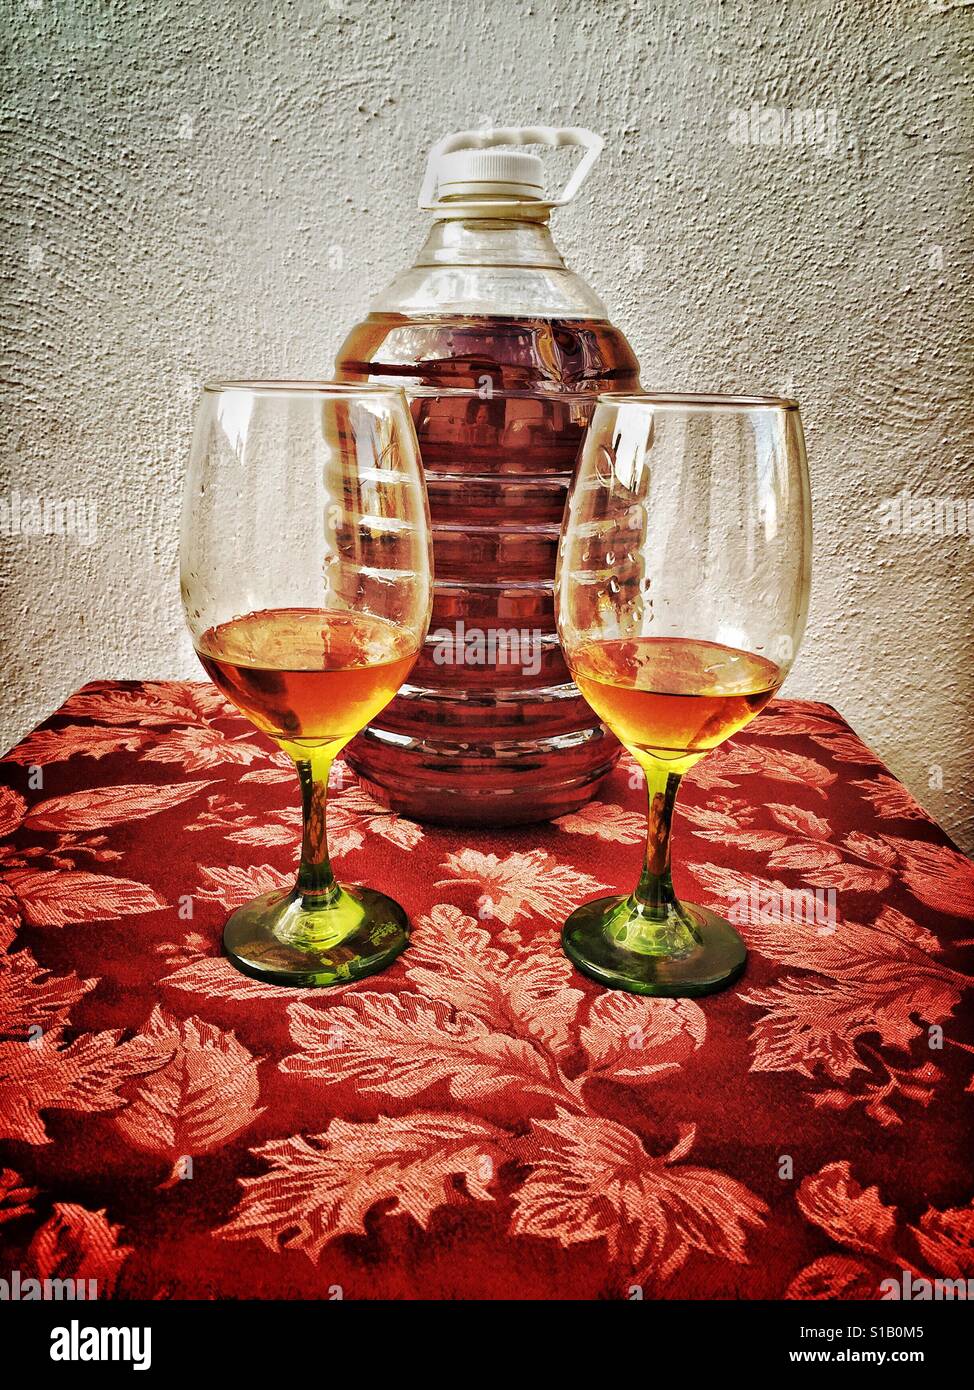 Einen fünf-Liter-Behälter mit Tequila sind zwei Gläser extra Añejo Tequila trinken vorgesetzt. Stockfoto